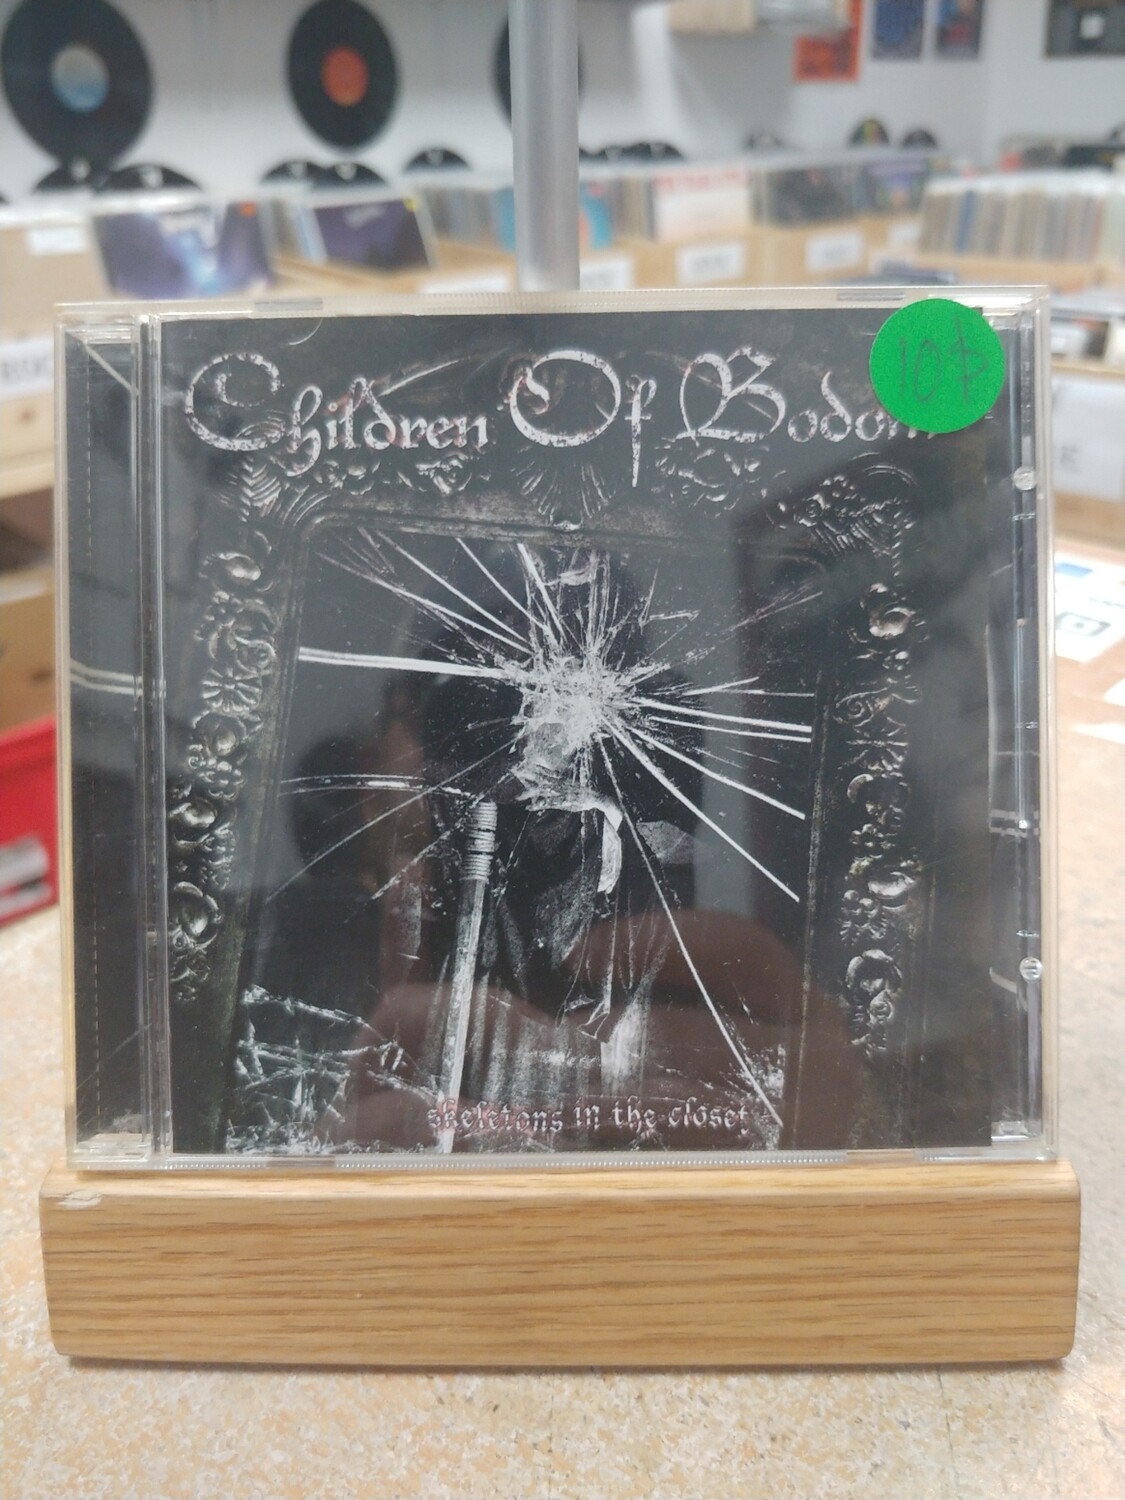 Children of Bodom - Skeletons in the closet (CD)